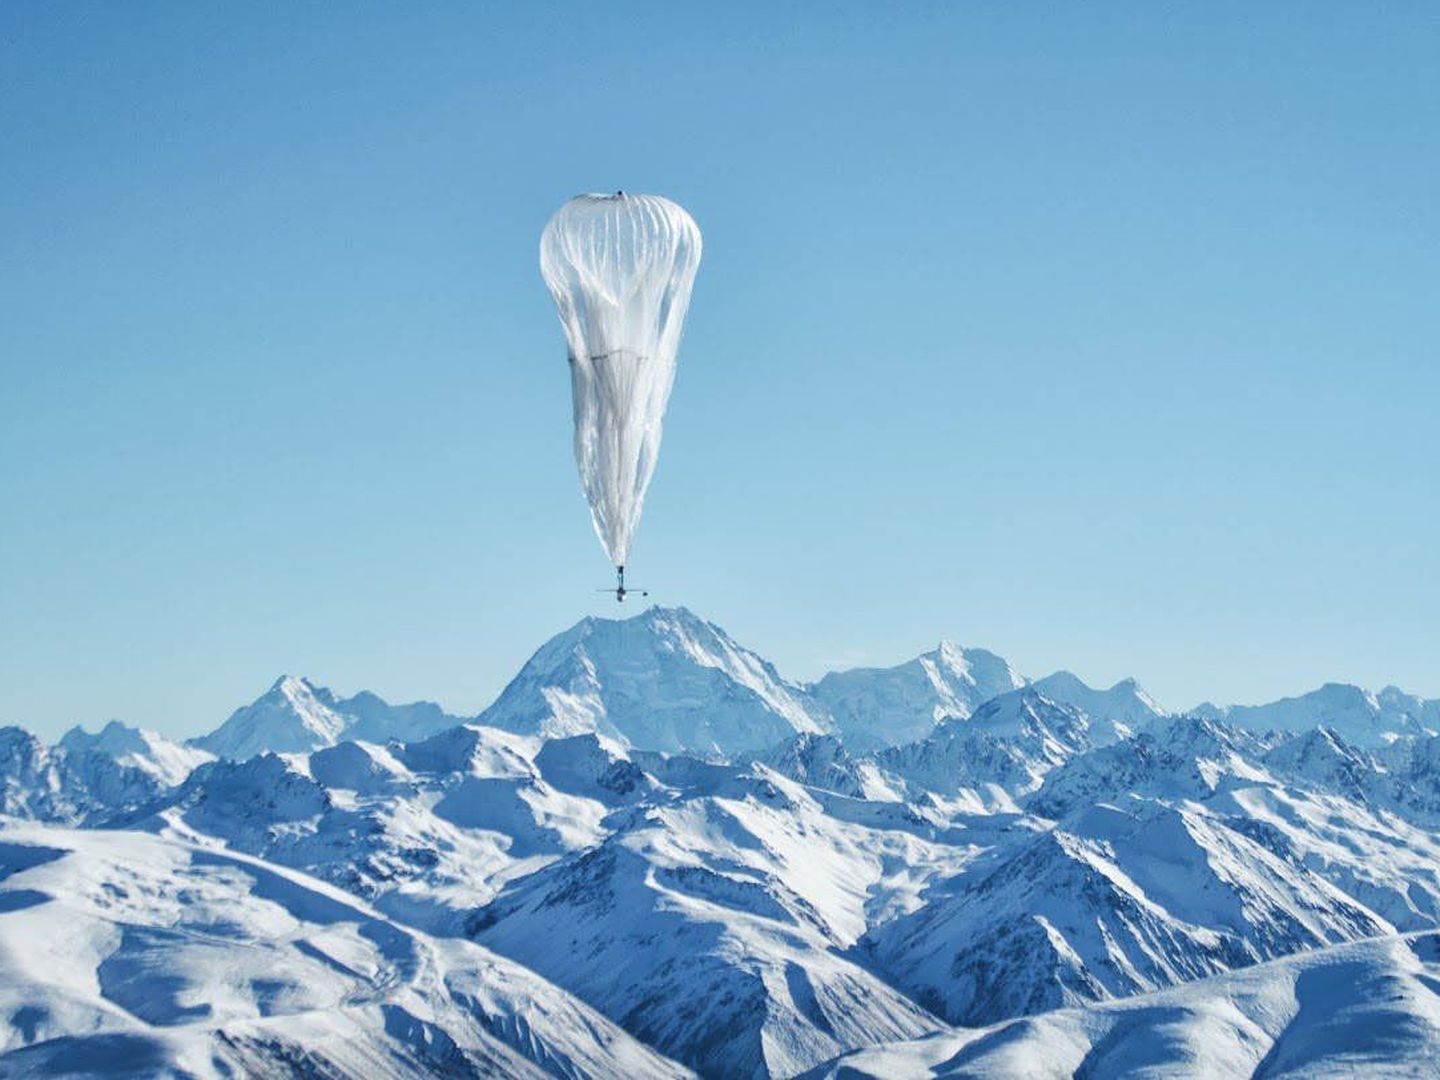 El objetivo de Project Loon es extender internet gracias al uso de globos aerostáticos. (Google)